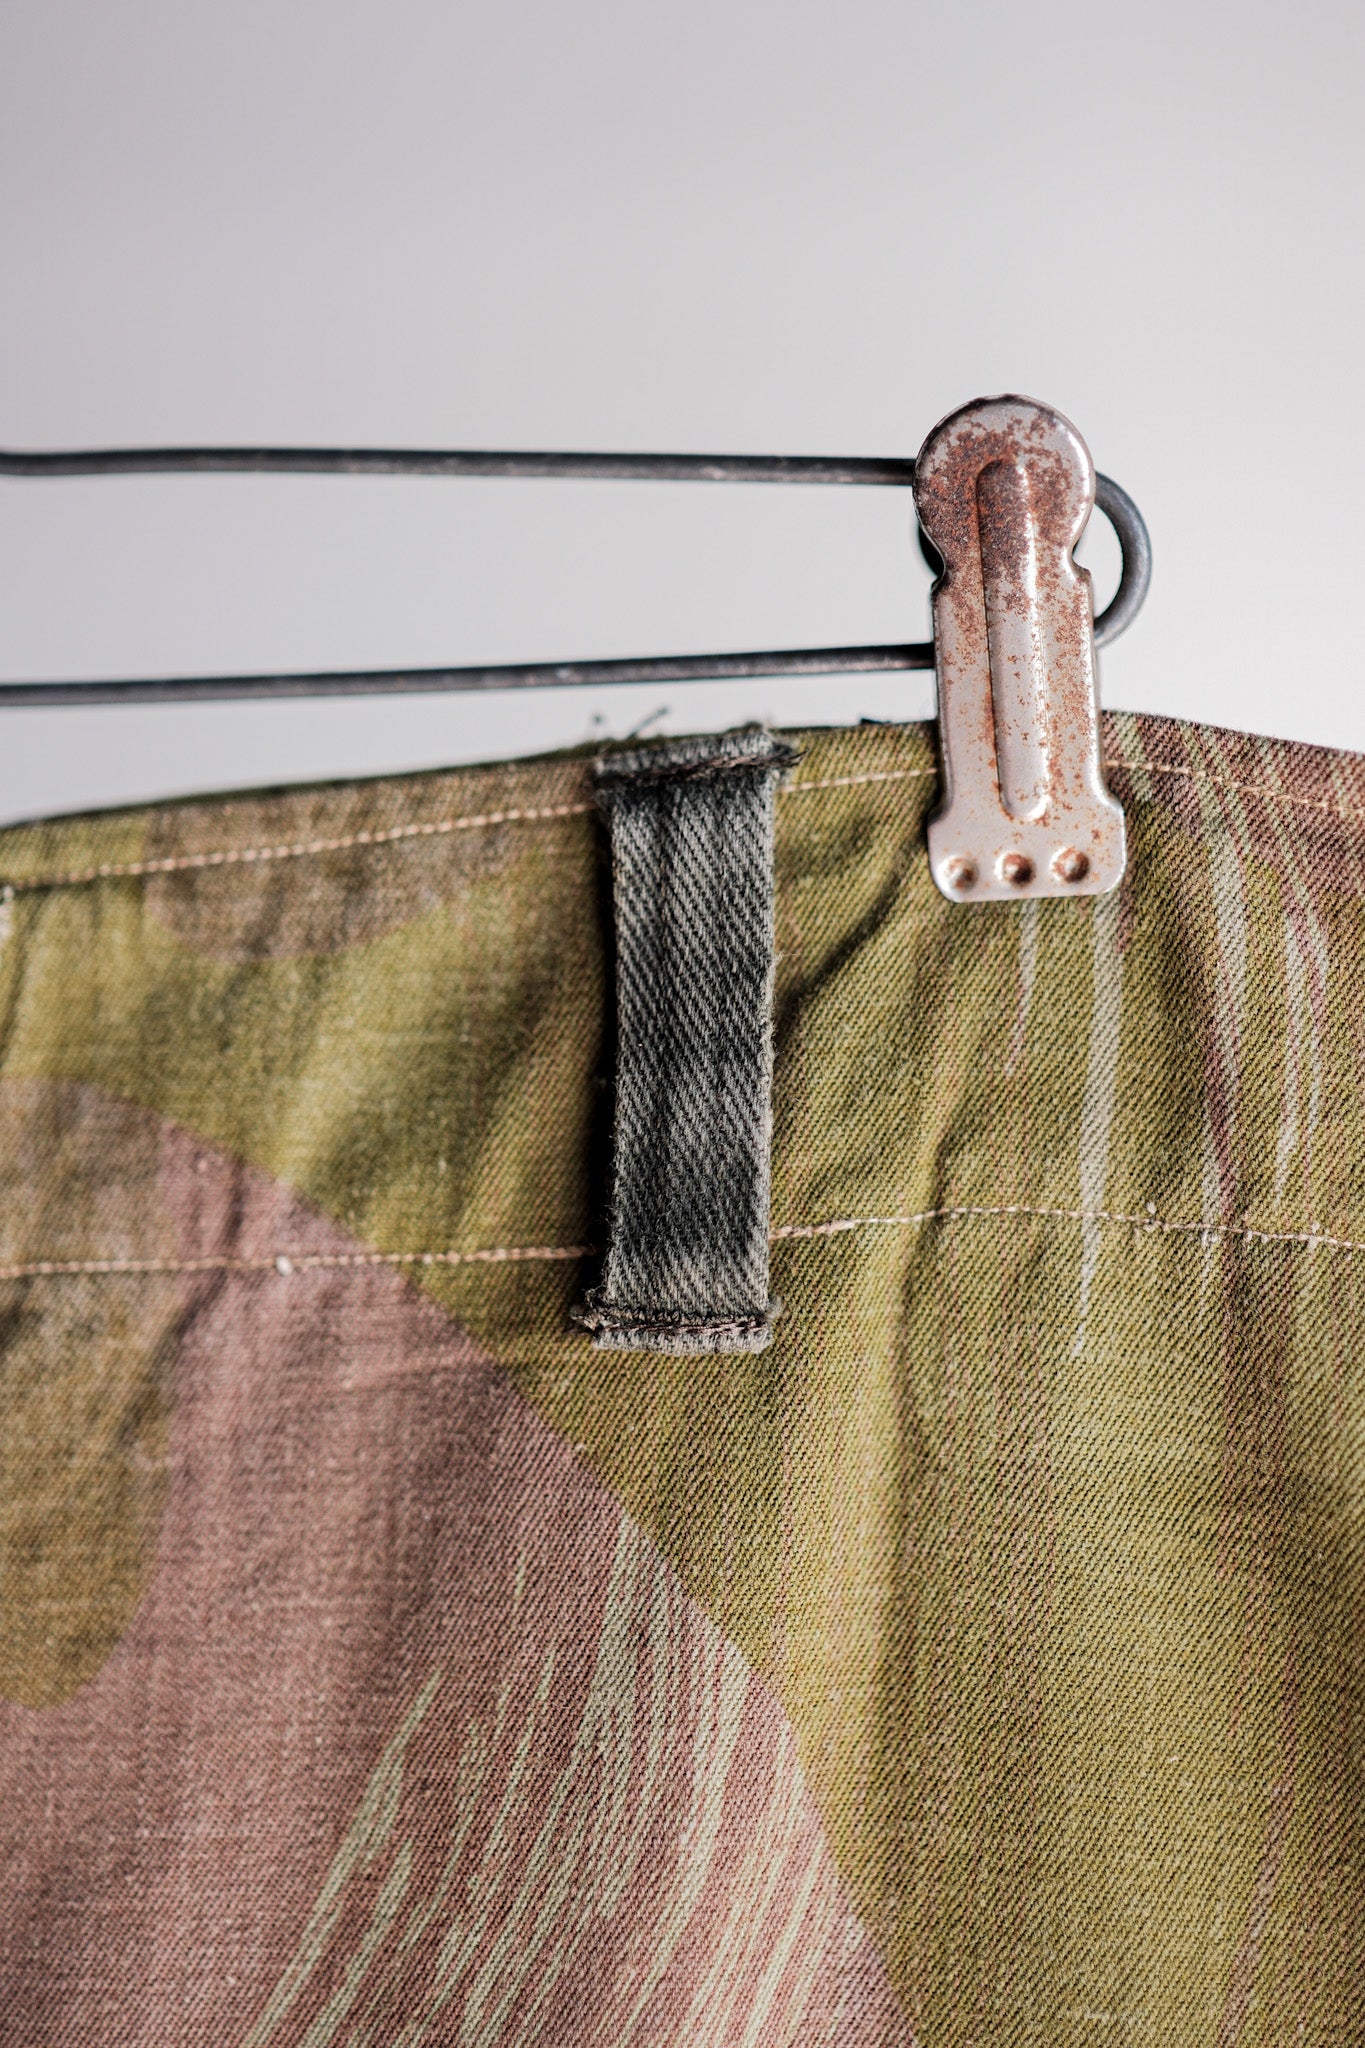 [〜50年代]比利時陸軍筆觸偽裝機載褲子尺寸。6“重製”“早期類型”